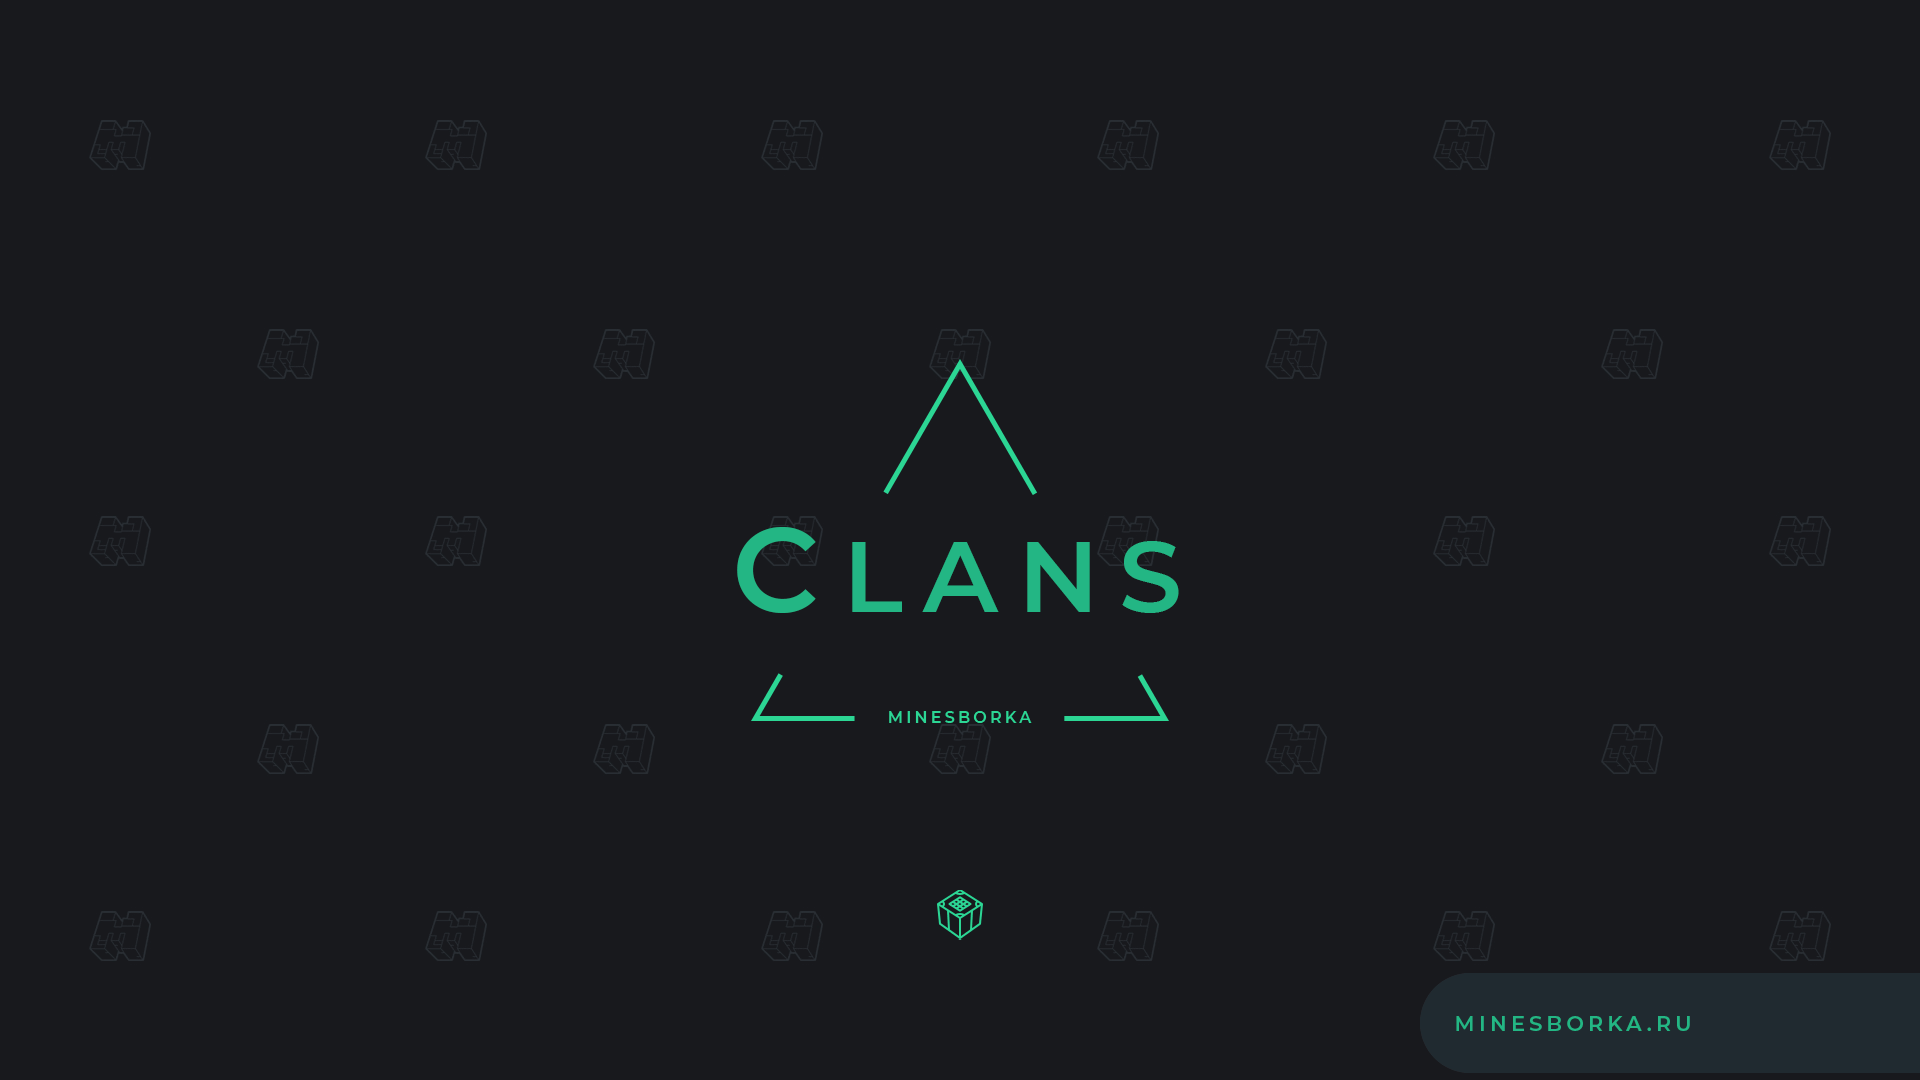 Скачать плагин Clans | Кланы через GUI меню для сервера Minecraft | Уровни, статистика и т.д.